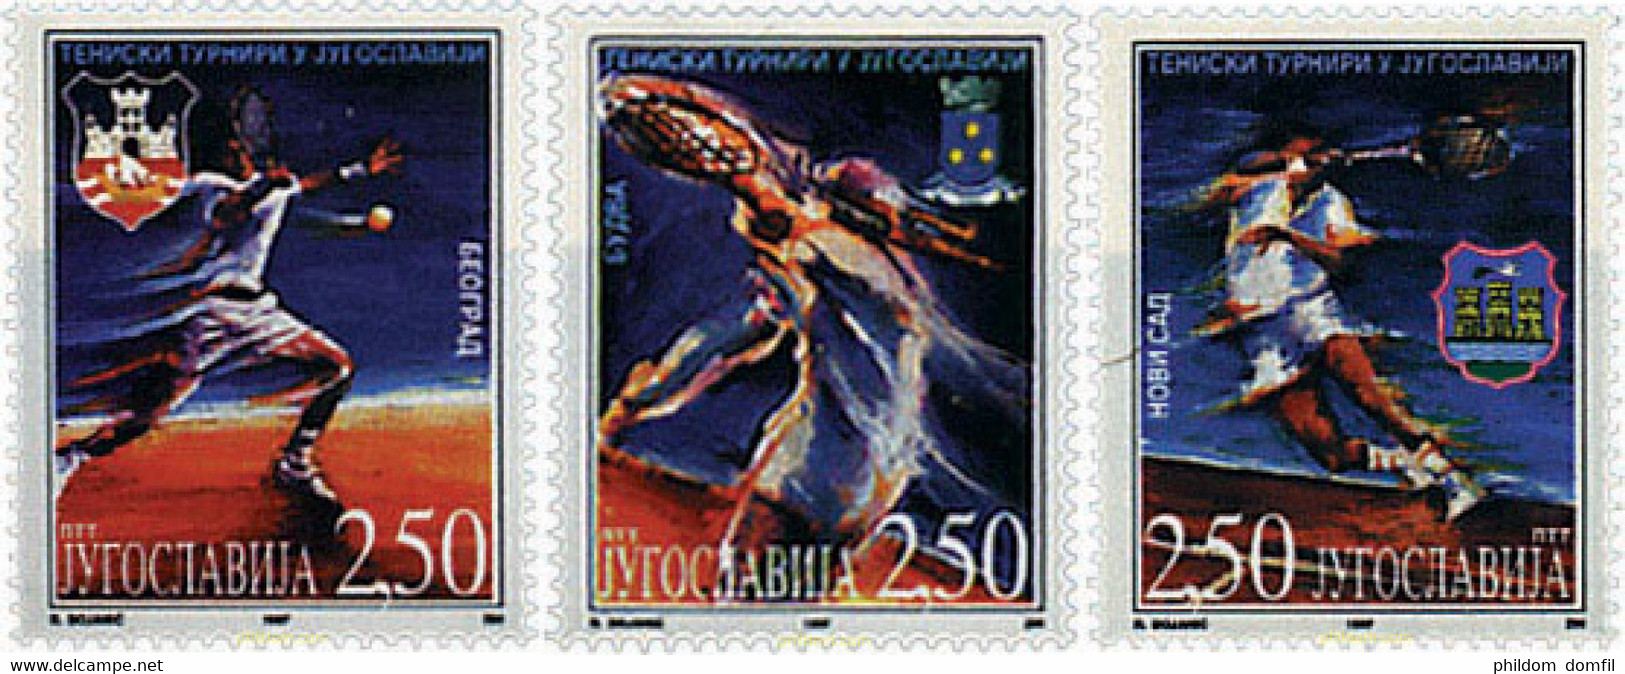 48084 MNH YUGOSLAVIA 1997 TORNEO DE TENIS EN YUGOSLAVIA - Usati